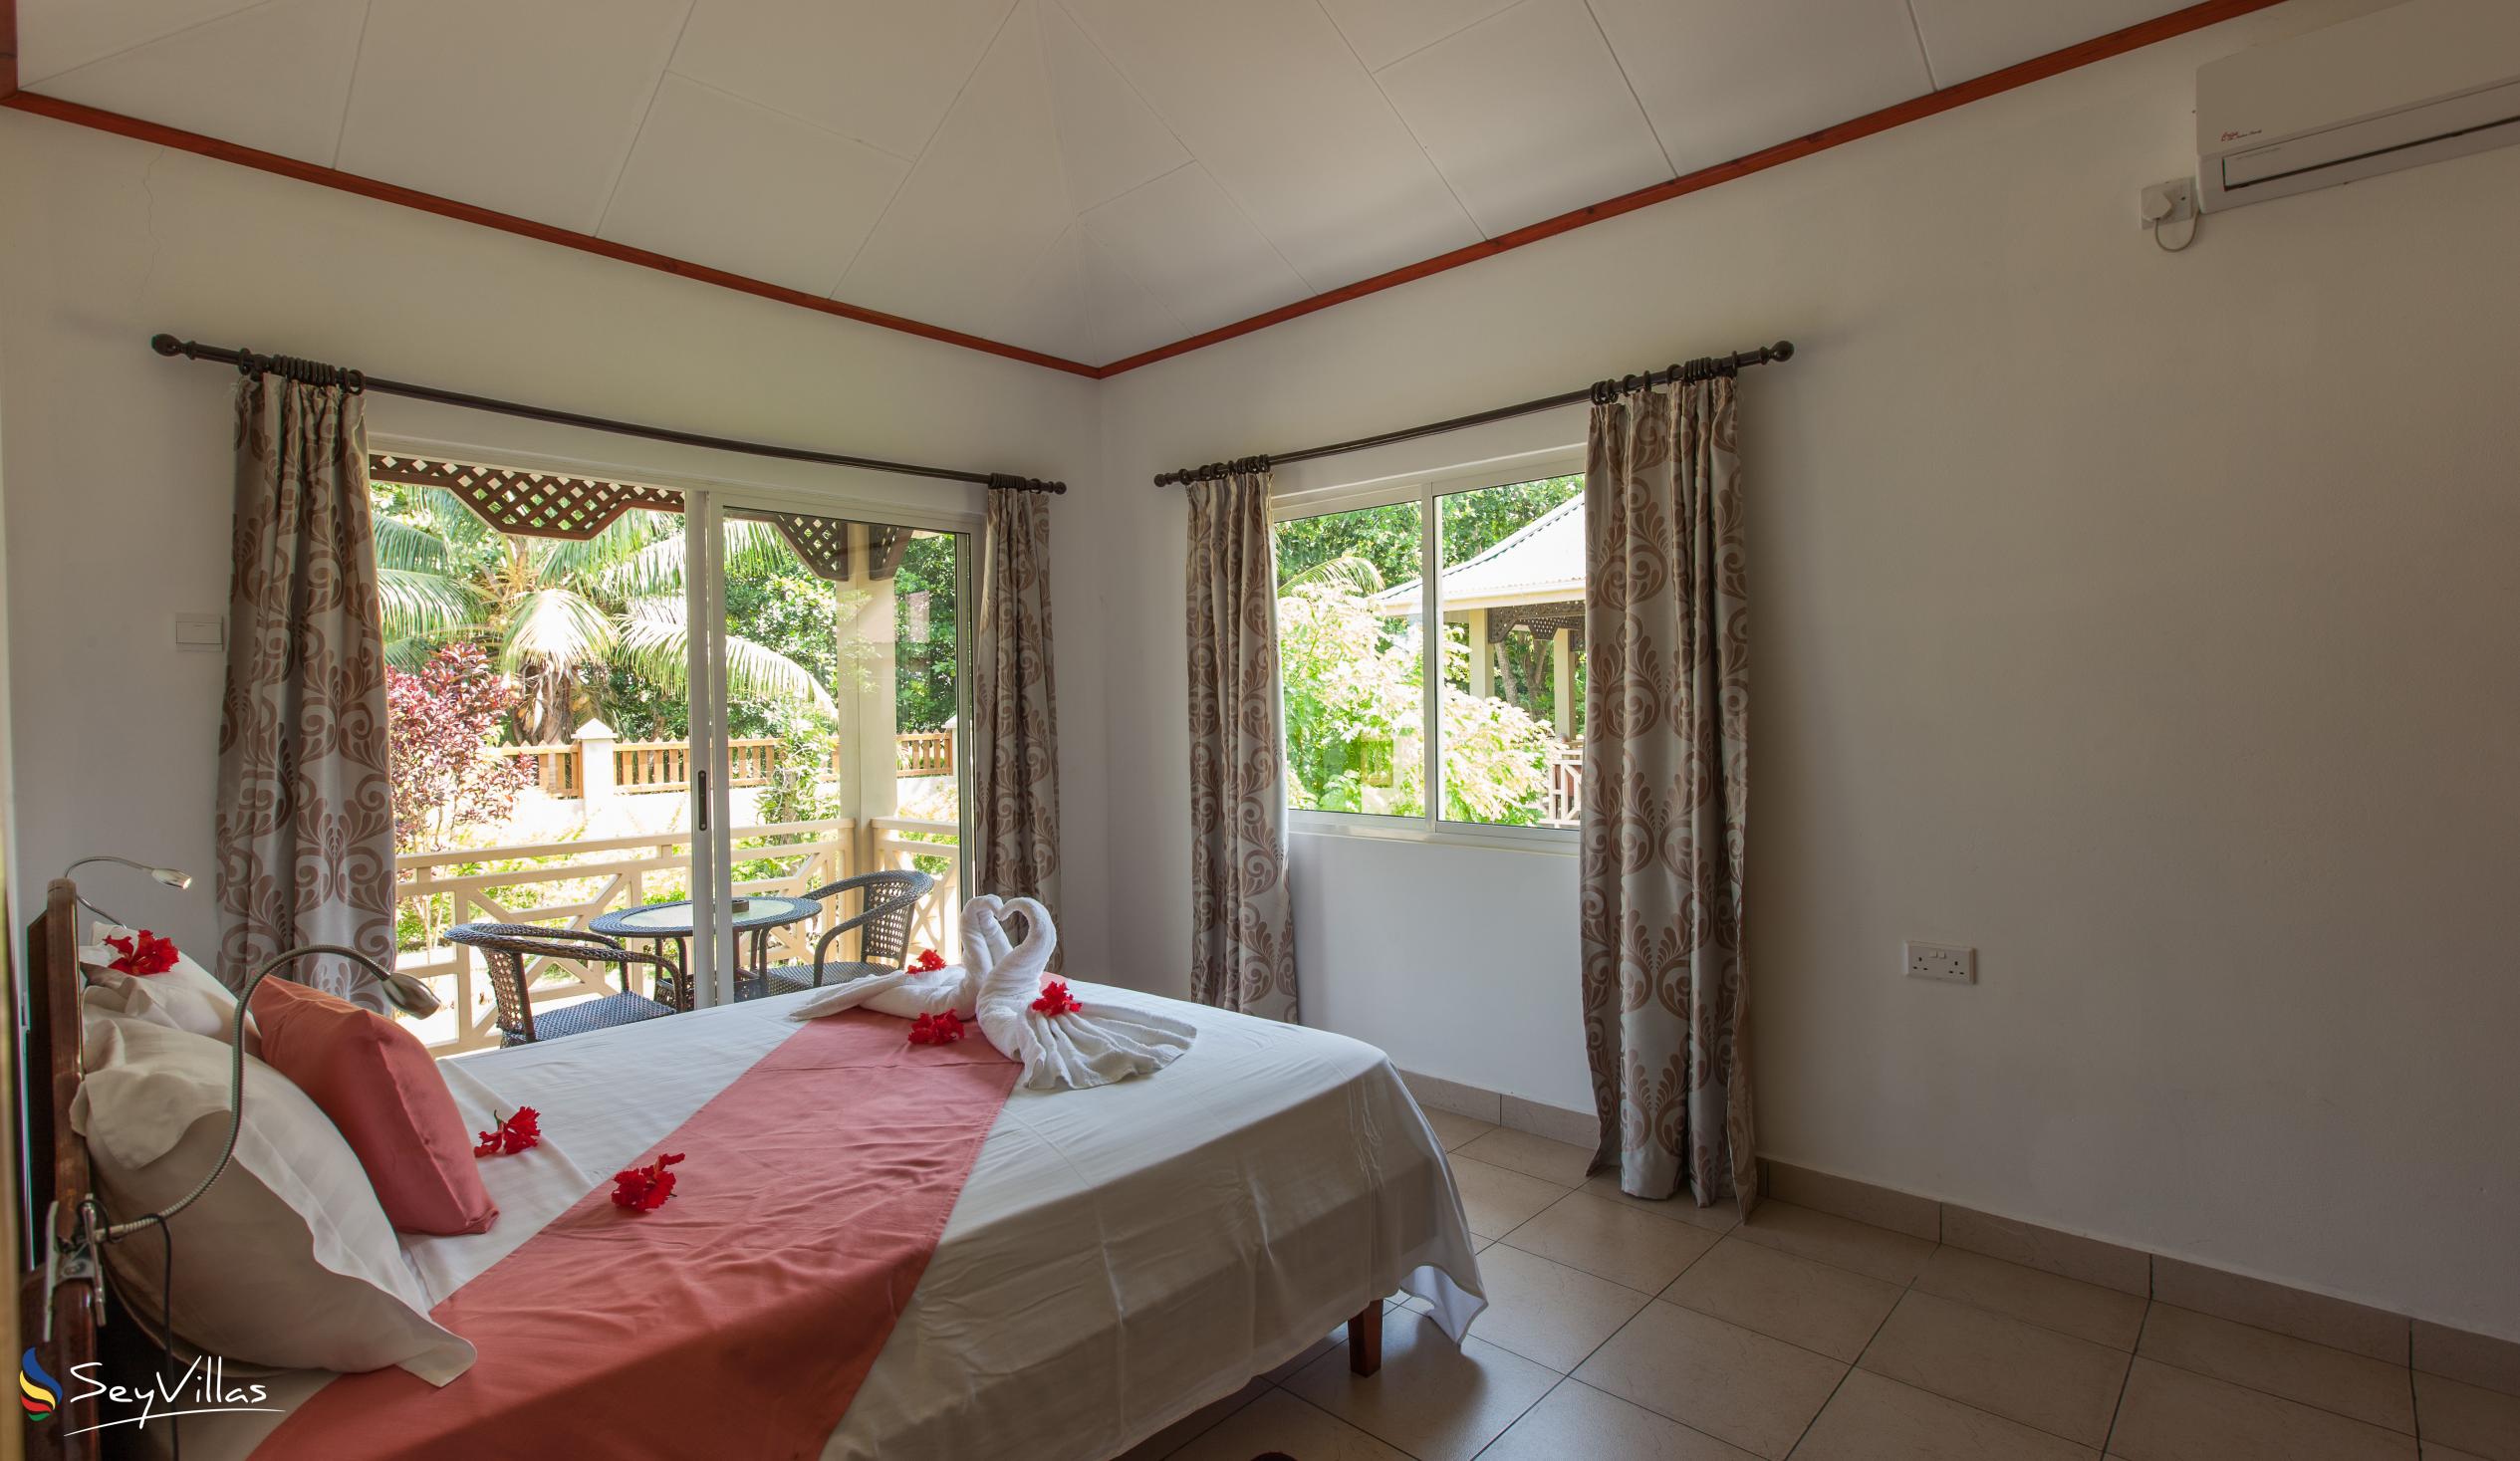 Photo 46: Hostellerie La Digue - 2-Bedroom Chalet - La Digue (Seychelles)